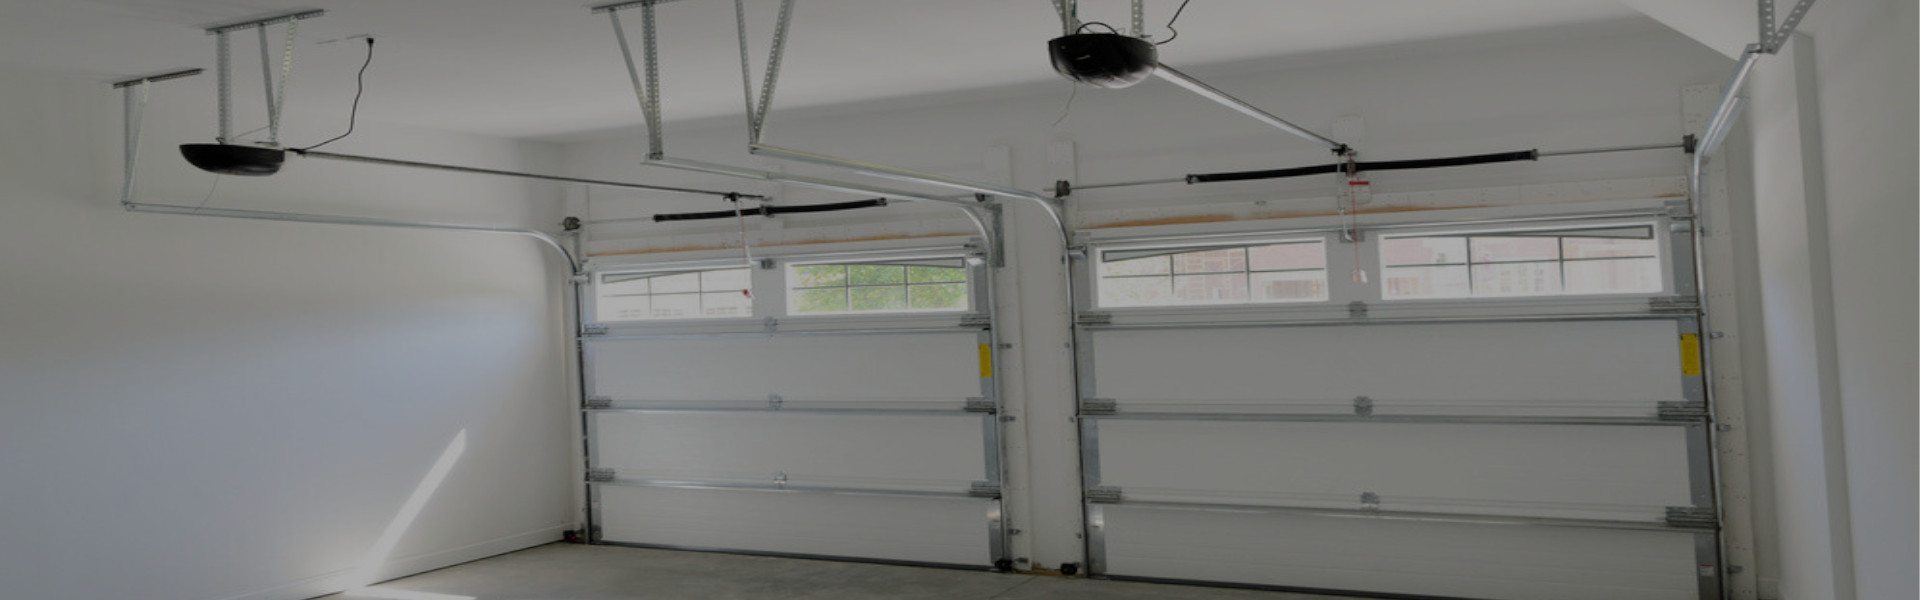 Slider Garage Door Repair, Glaziers in Cricklewood, NW2